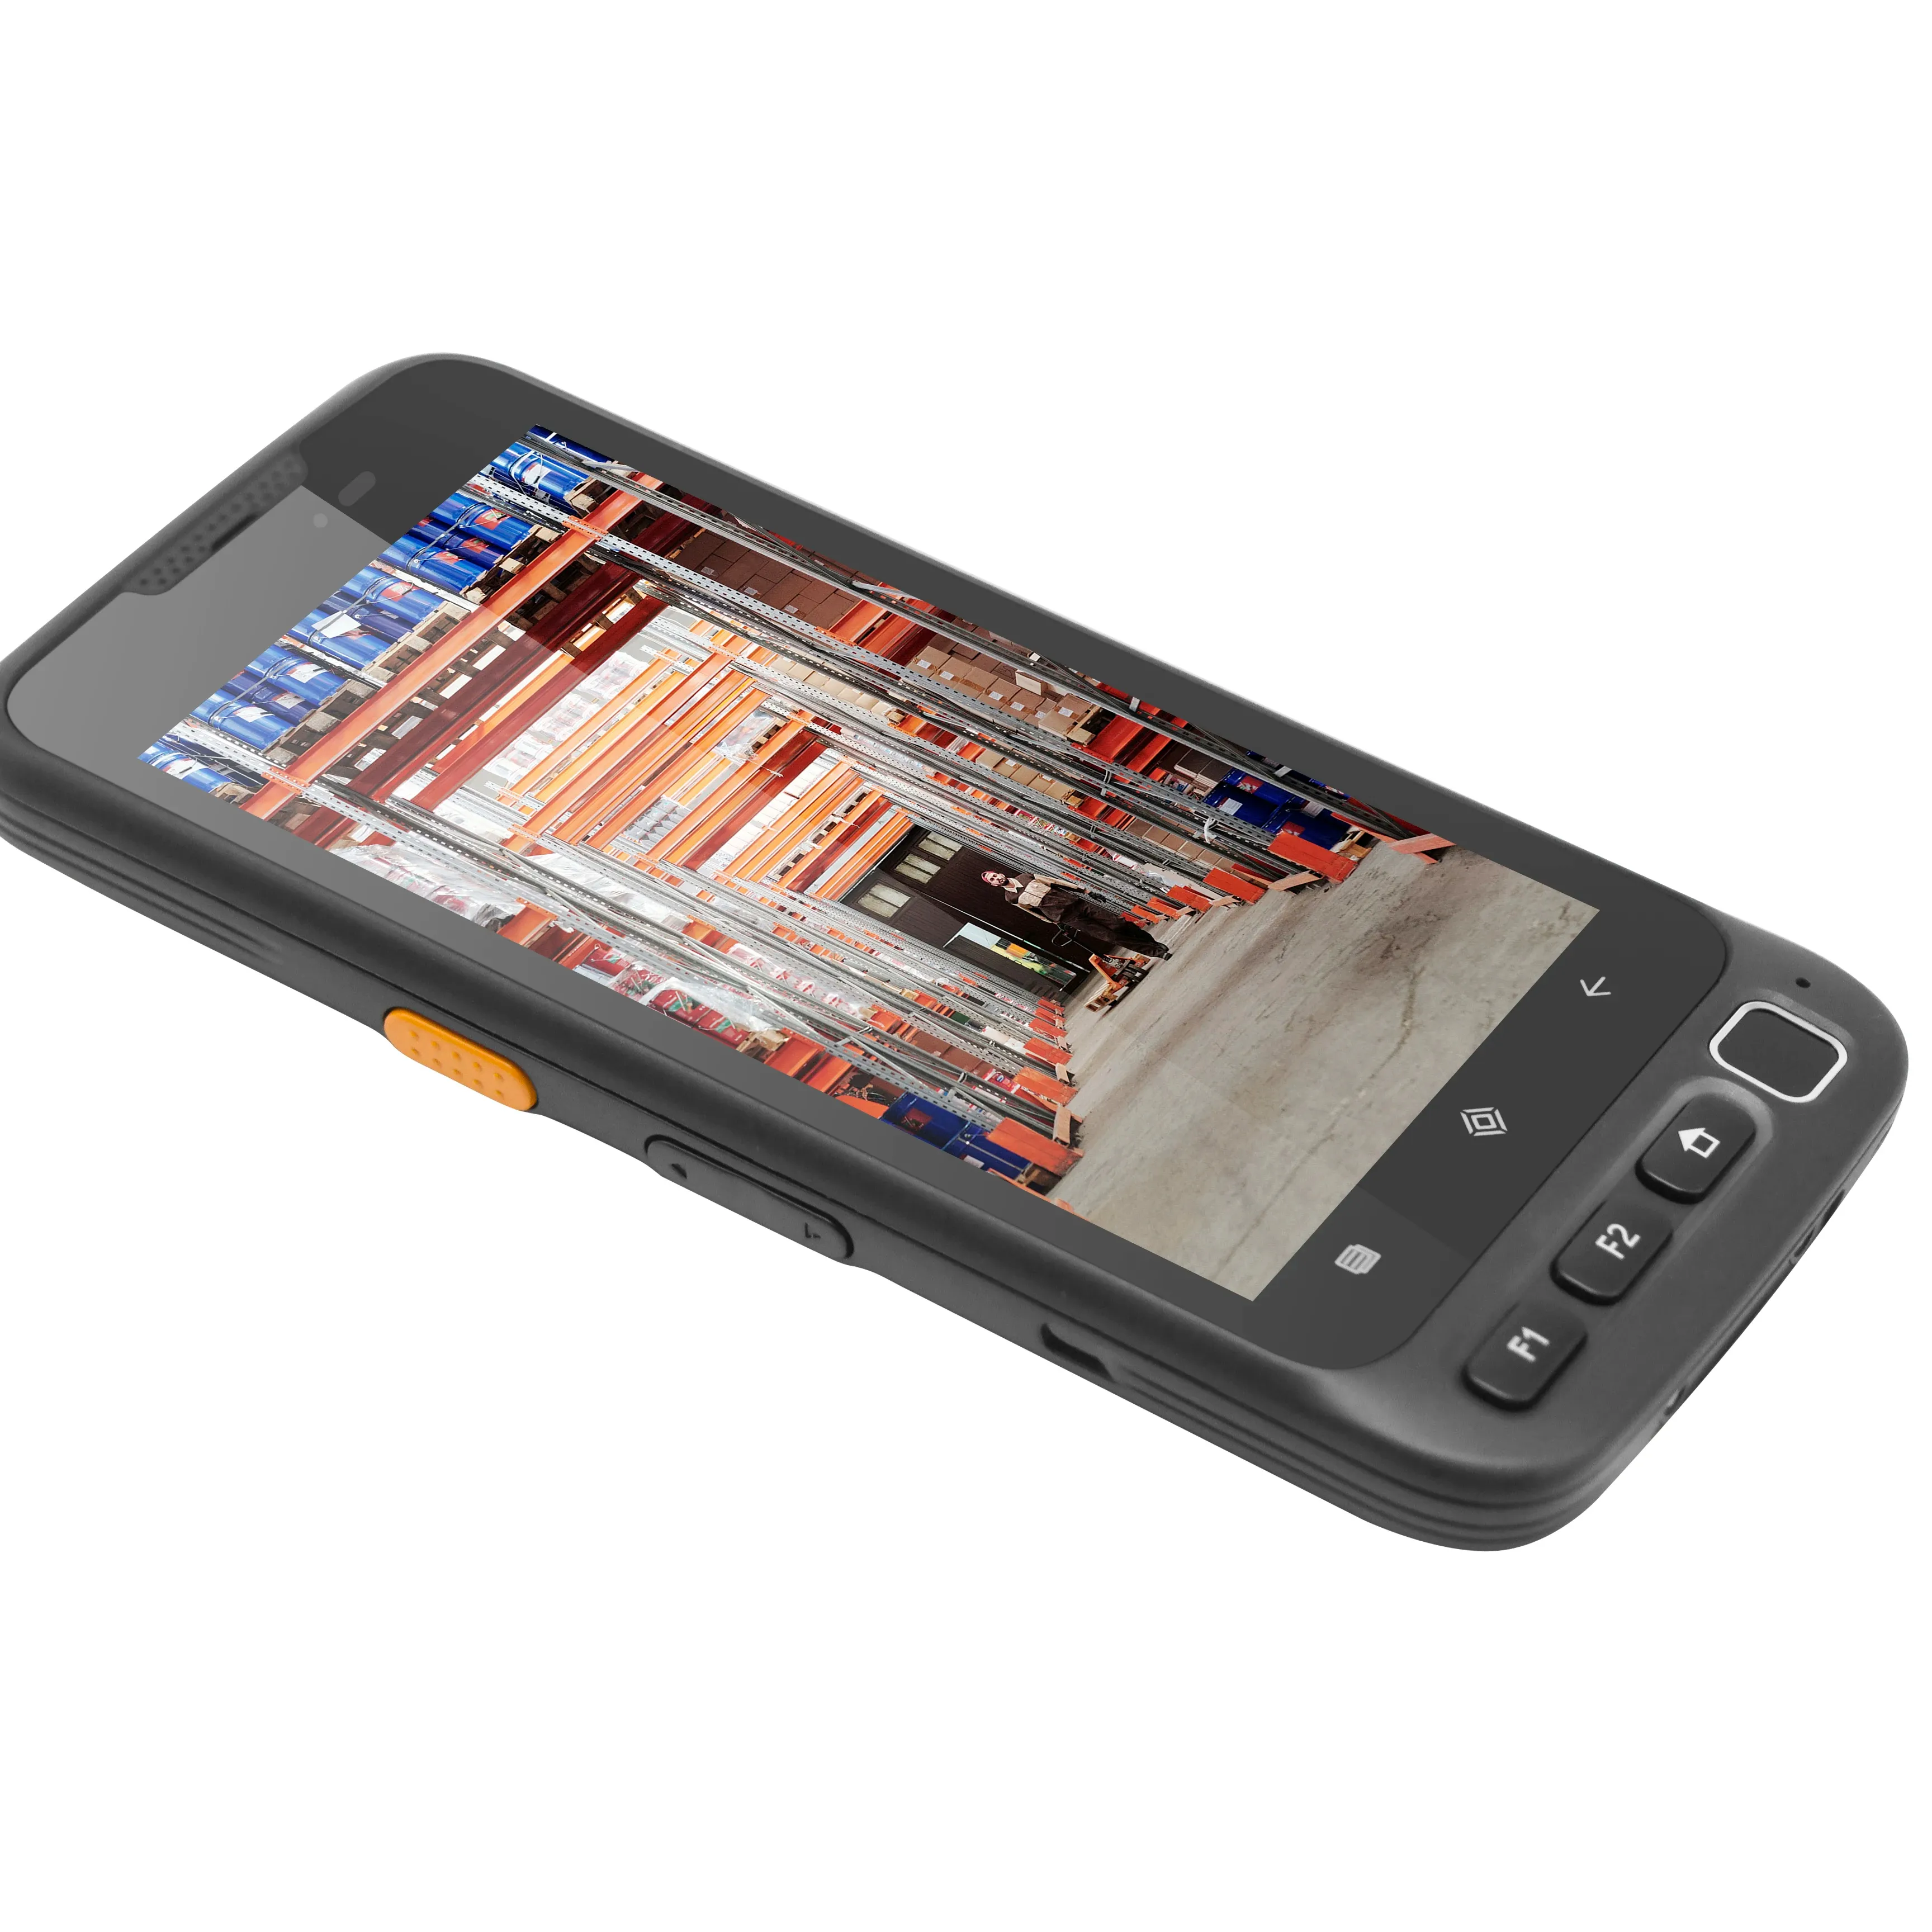 PDA barkod tarayıcı 1D 2D Bluetooth Android el terminali sağlam PDA kablosuz mobil 1D barkod tarayıcı veri toplayıcı